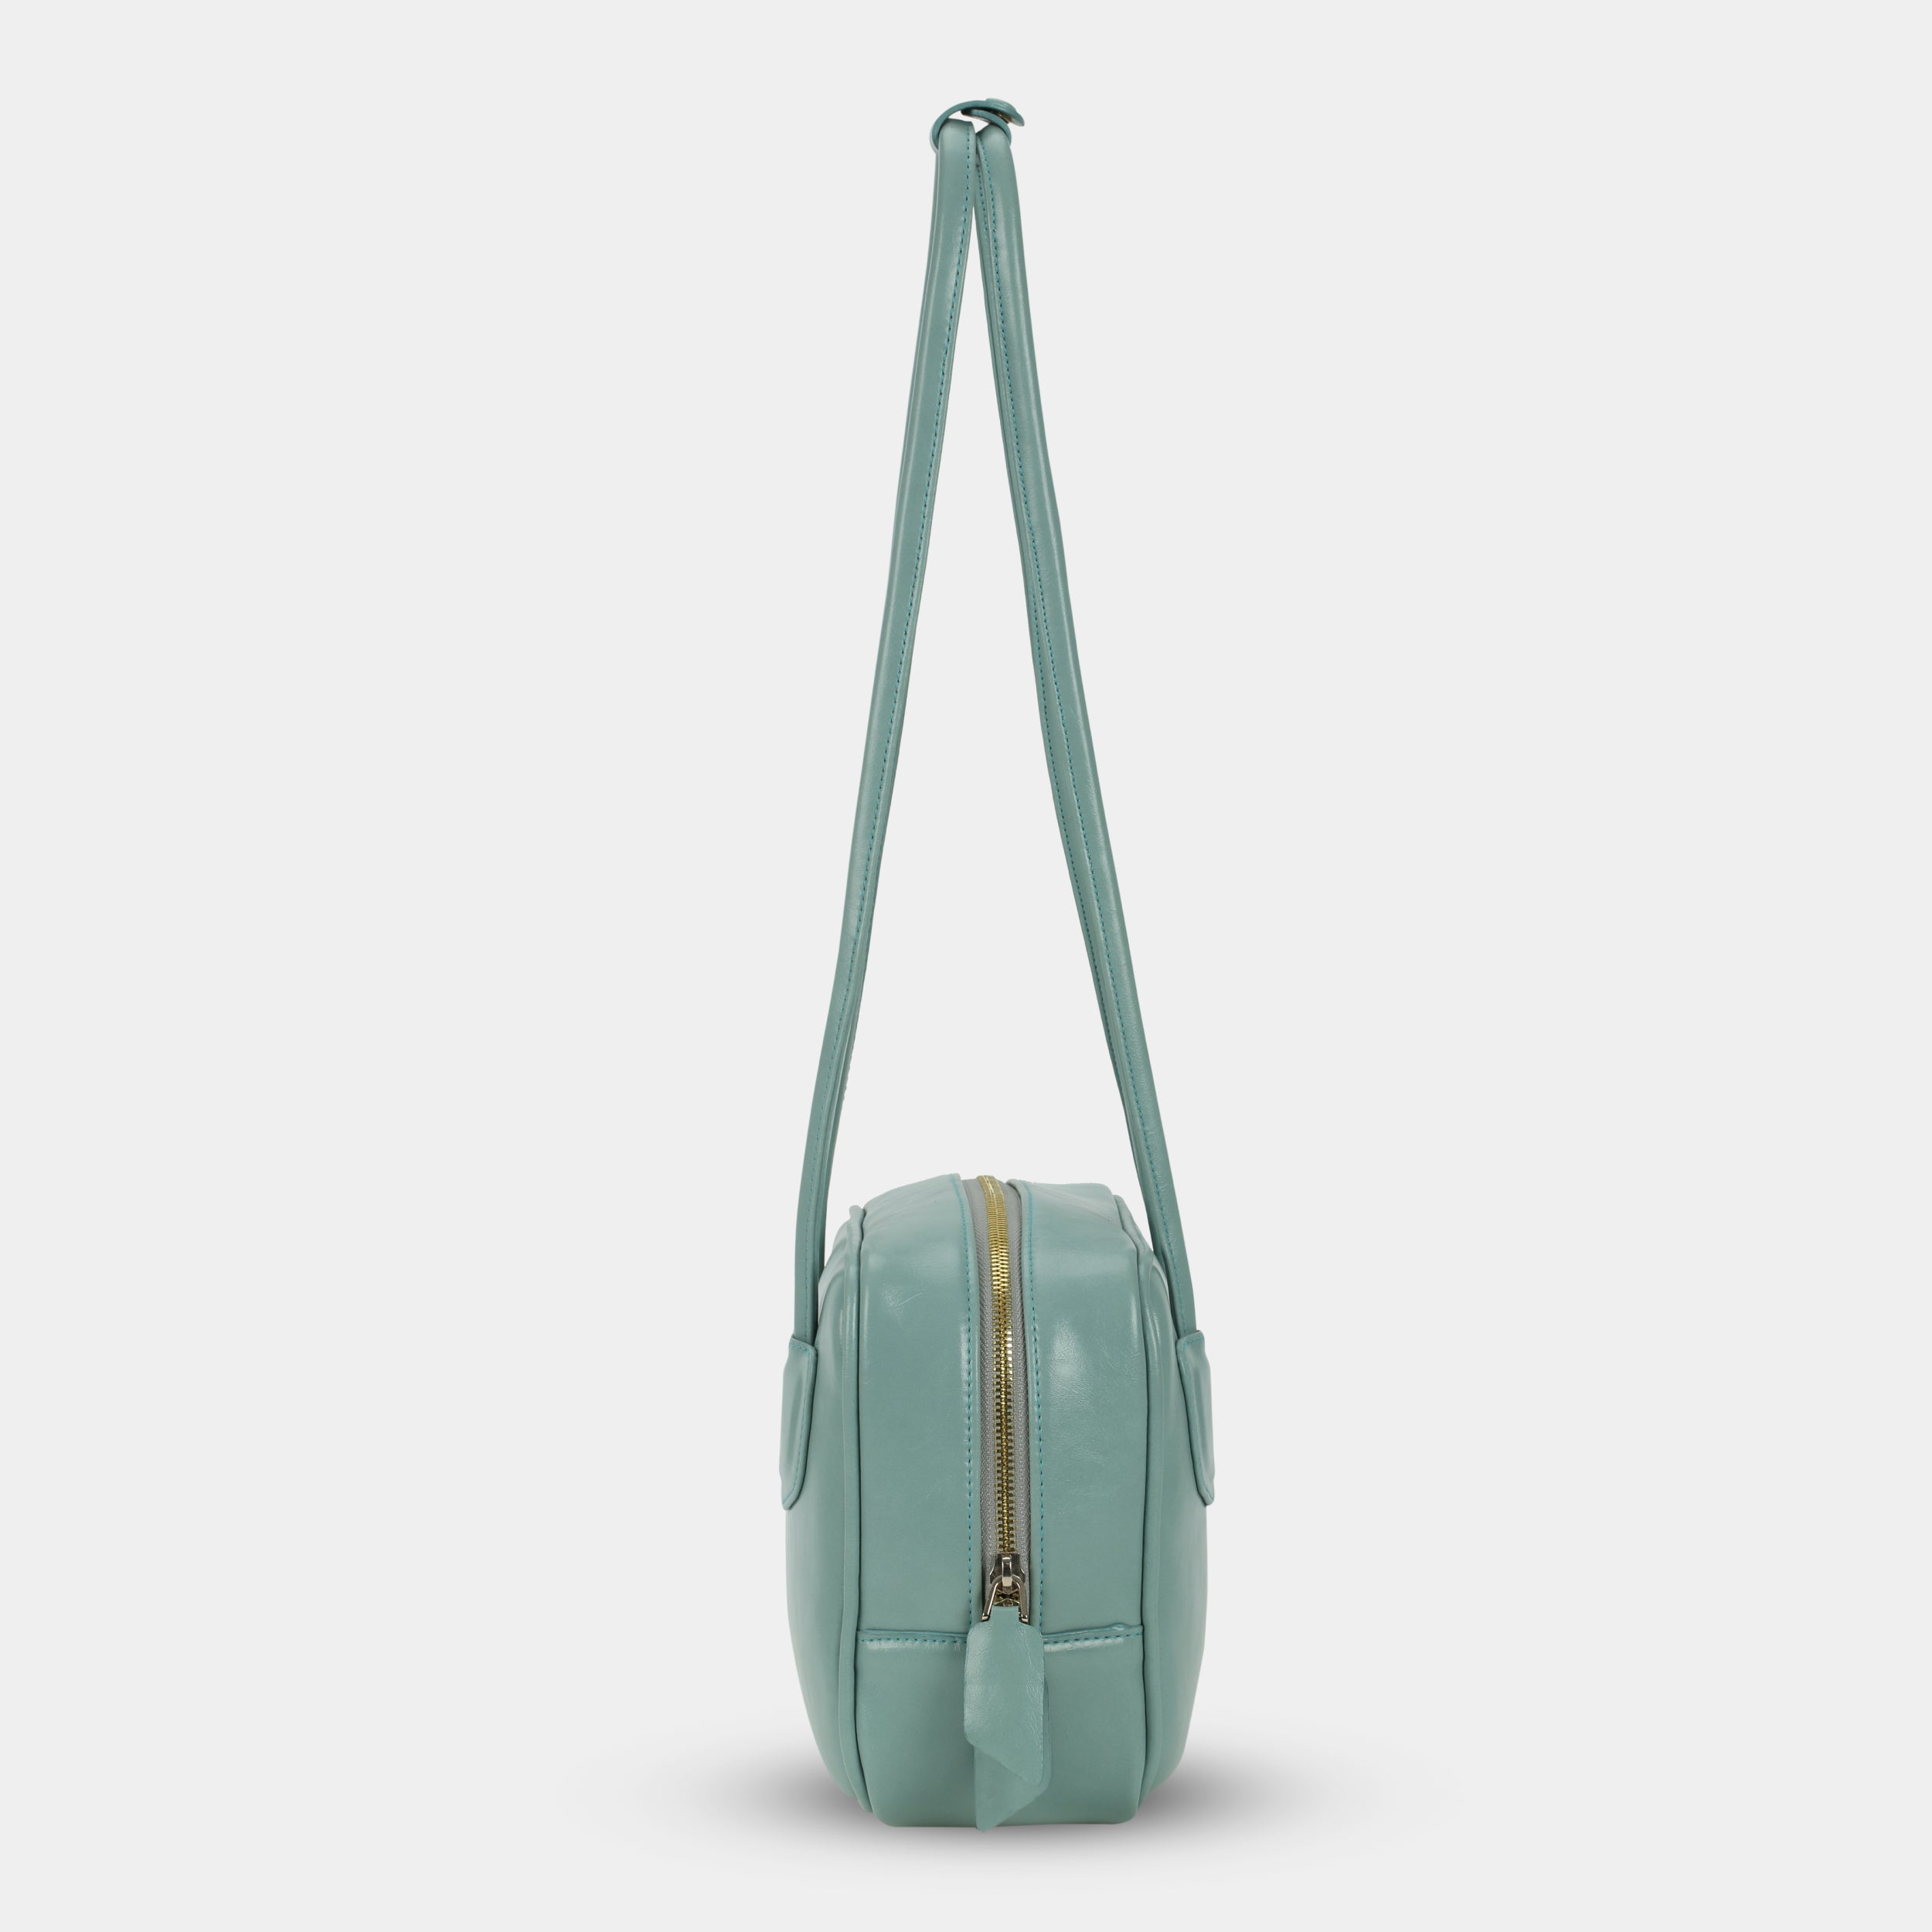 Túi xách SANDWICH màu xanh ngọc pastel